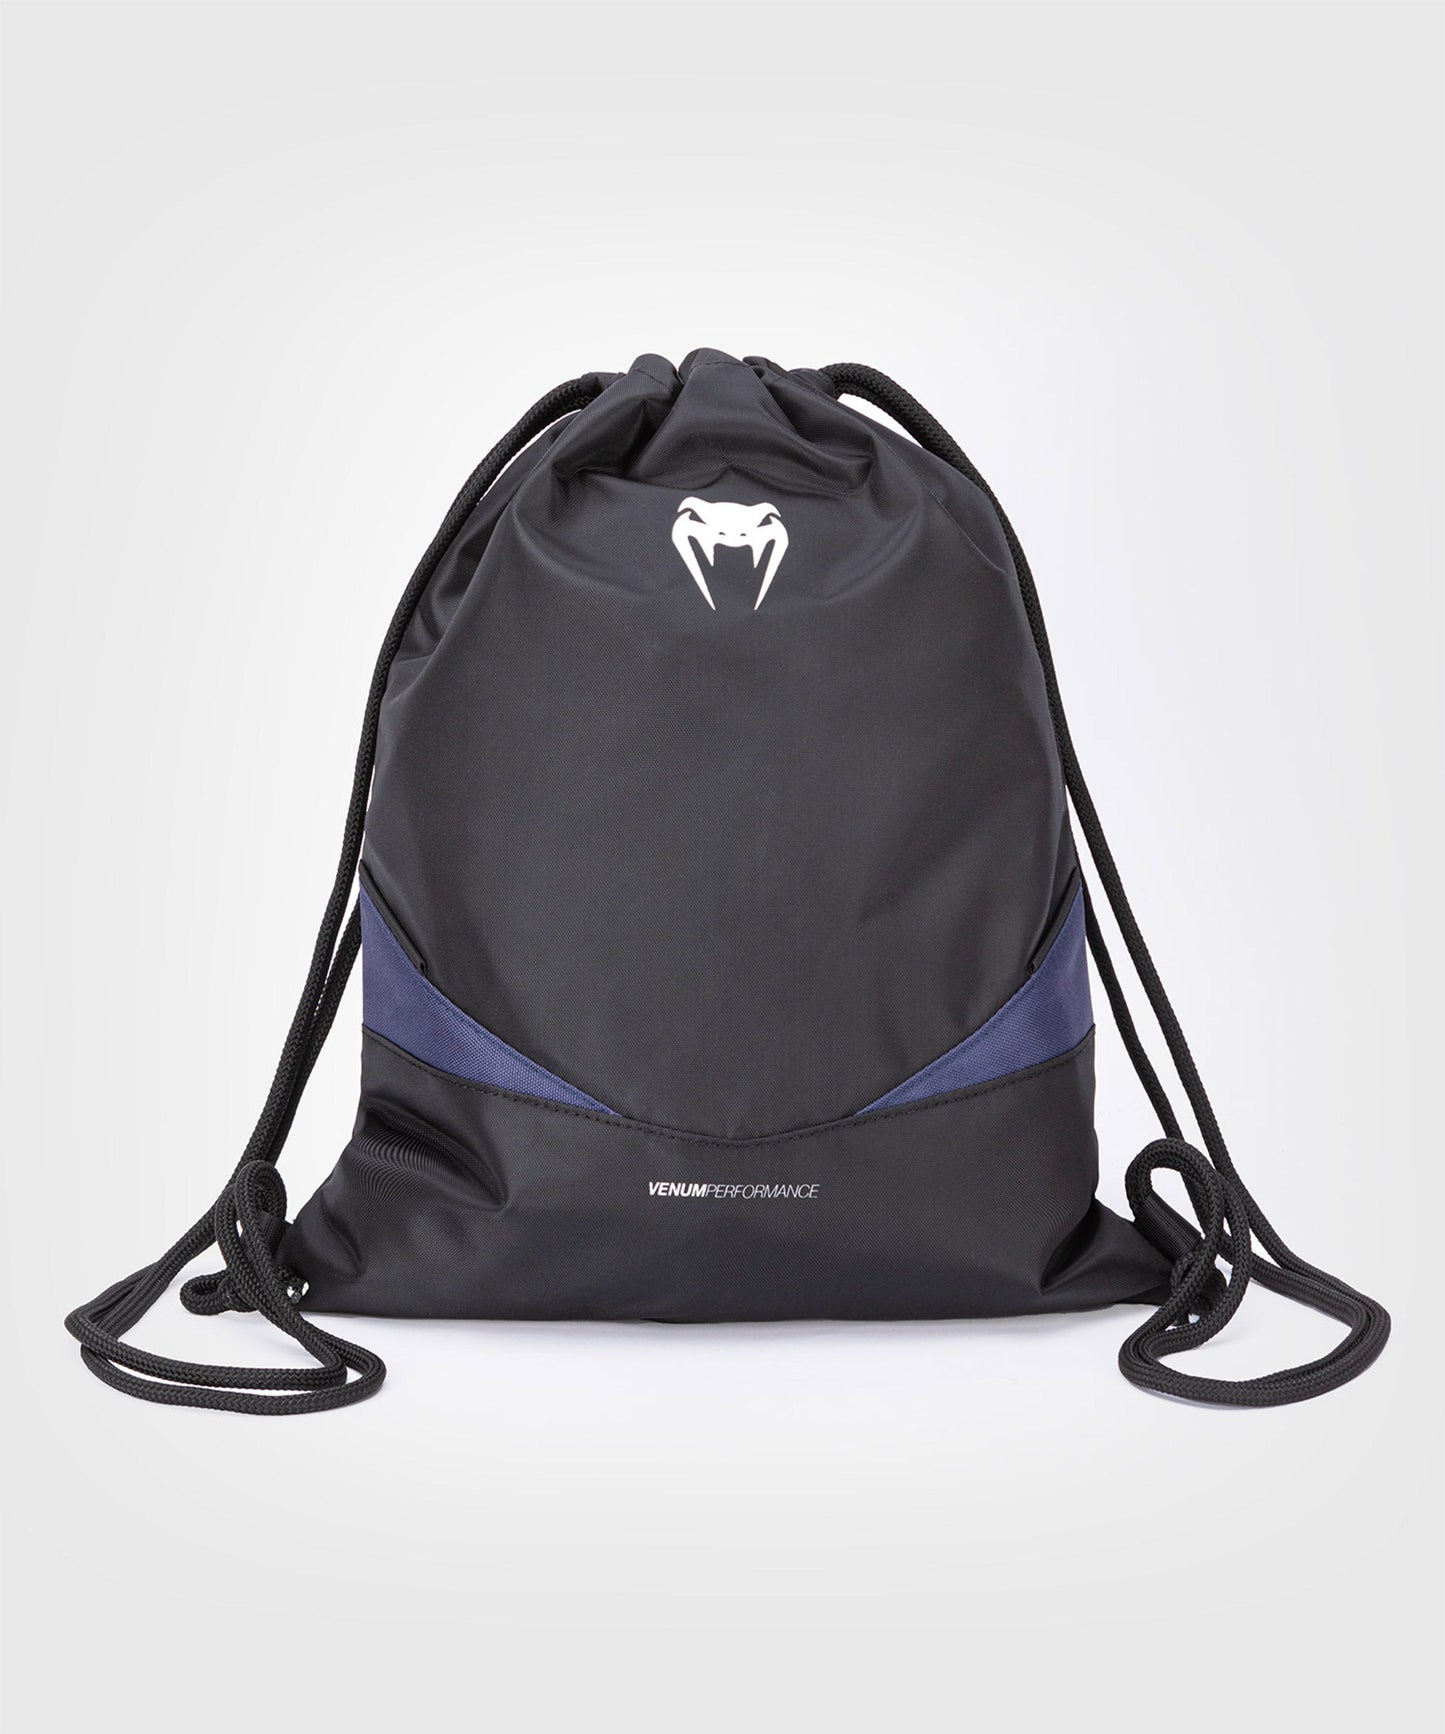 Venum Evo 2 Drawstring Bag - Black/Blue